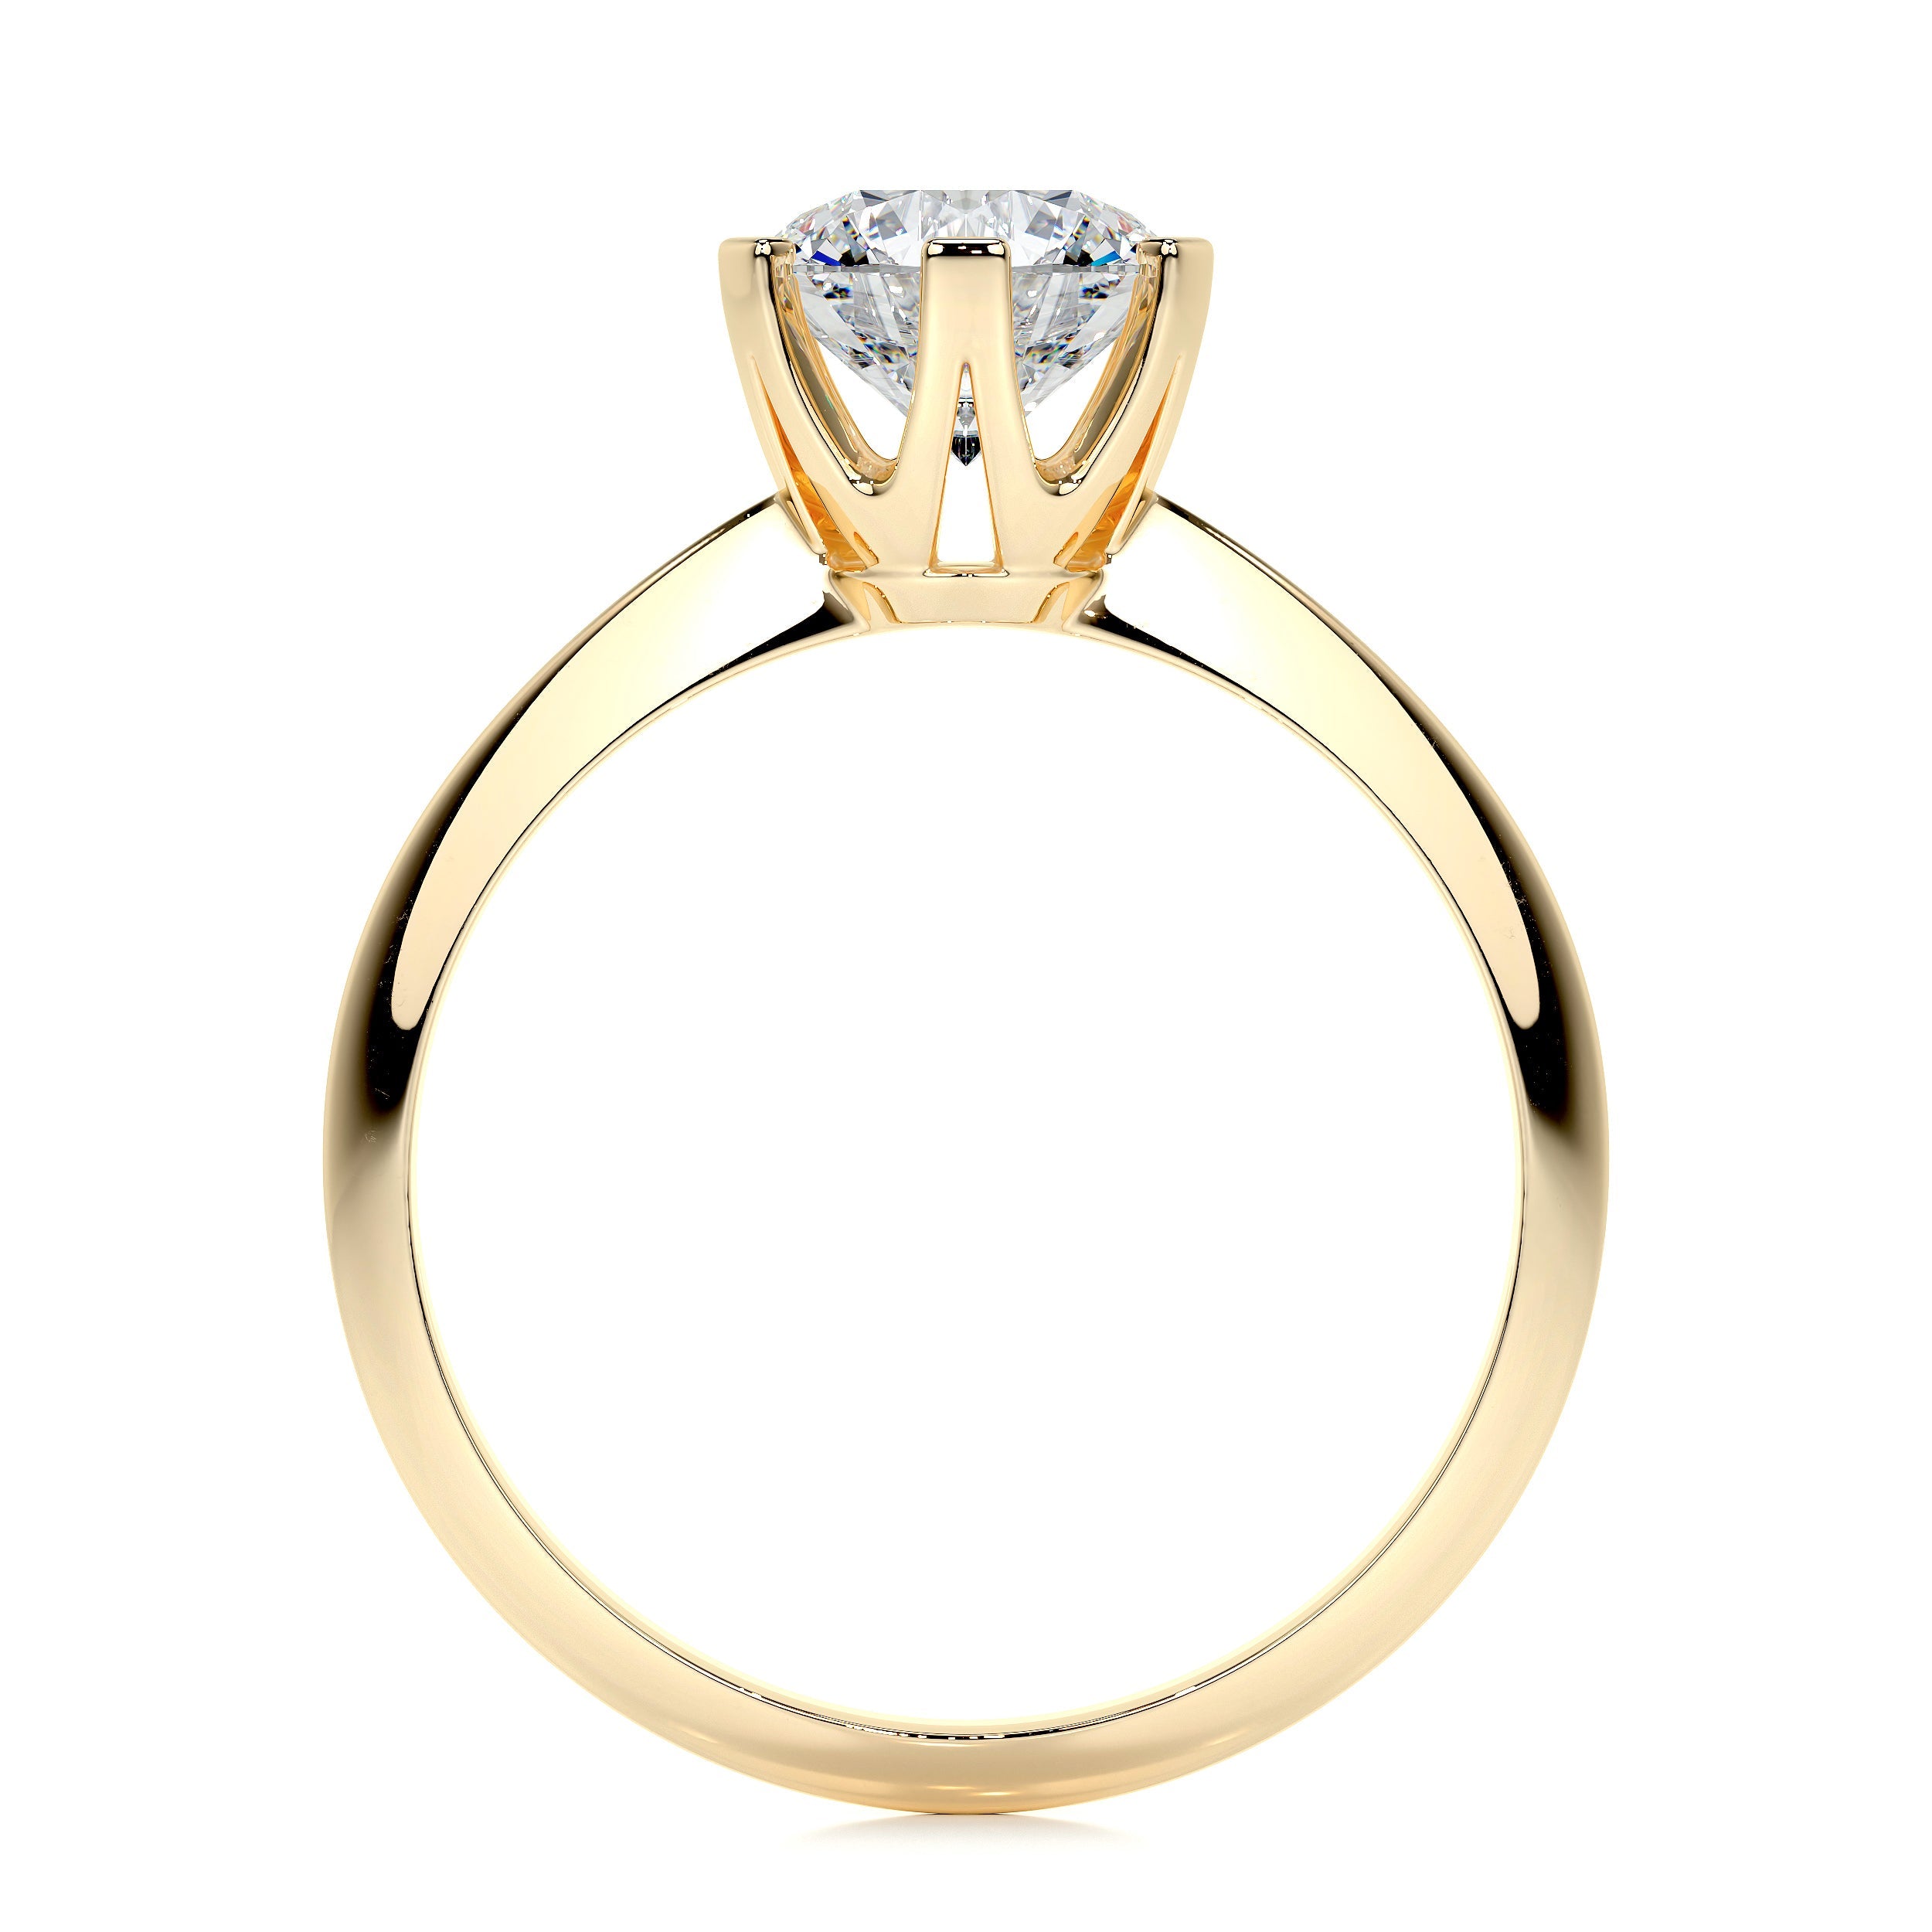 Alexis Lab Grown Diamond Ring   (1.25 Carat) -18K Yellow Gold